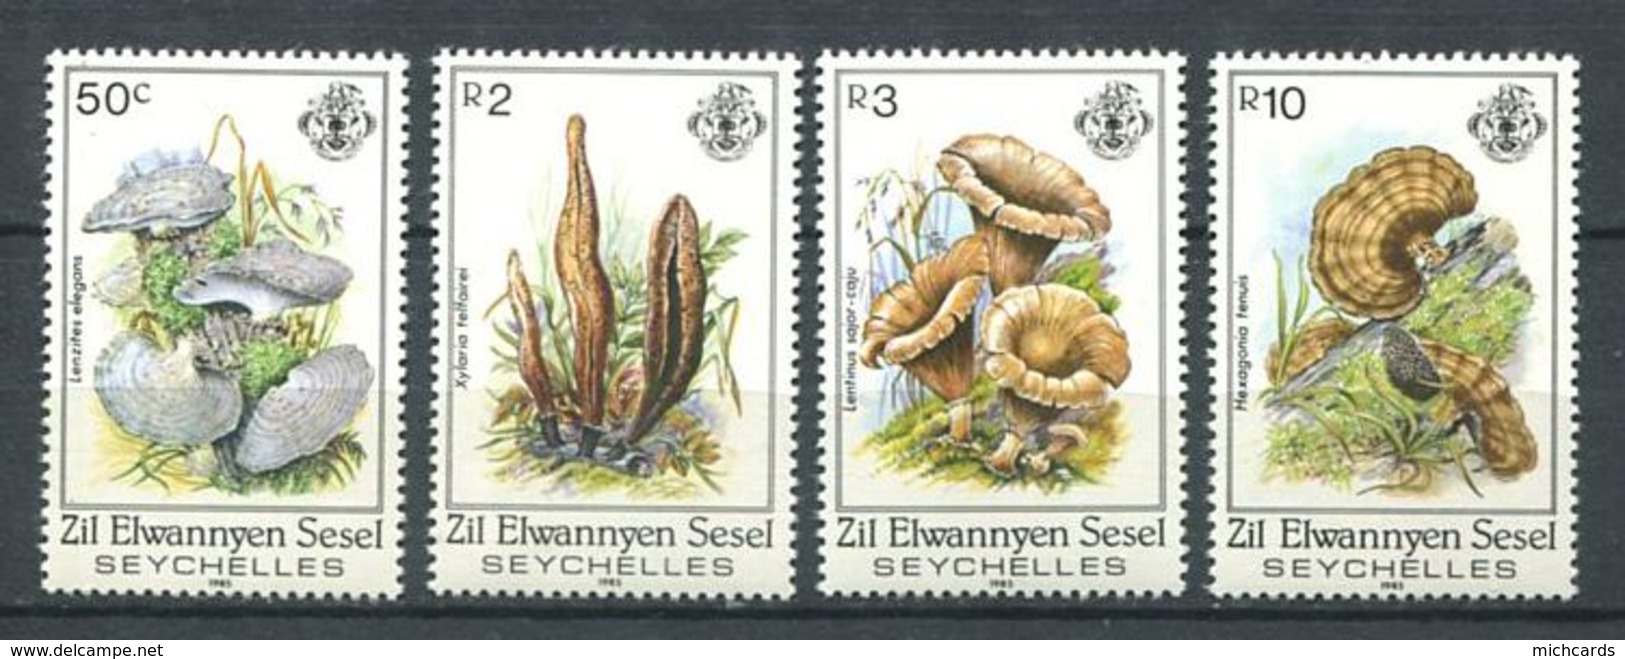 234 ZIL ELWANNYEN SESEL Seychelles 1985 - Yvert 109/12 - Champignon - Neuf **(MNH) Sans Charniere - Seychelles (1976-...)